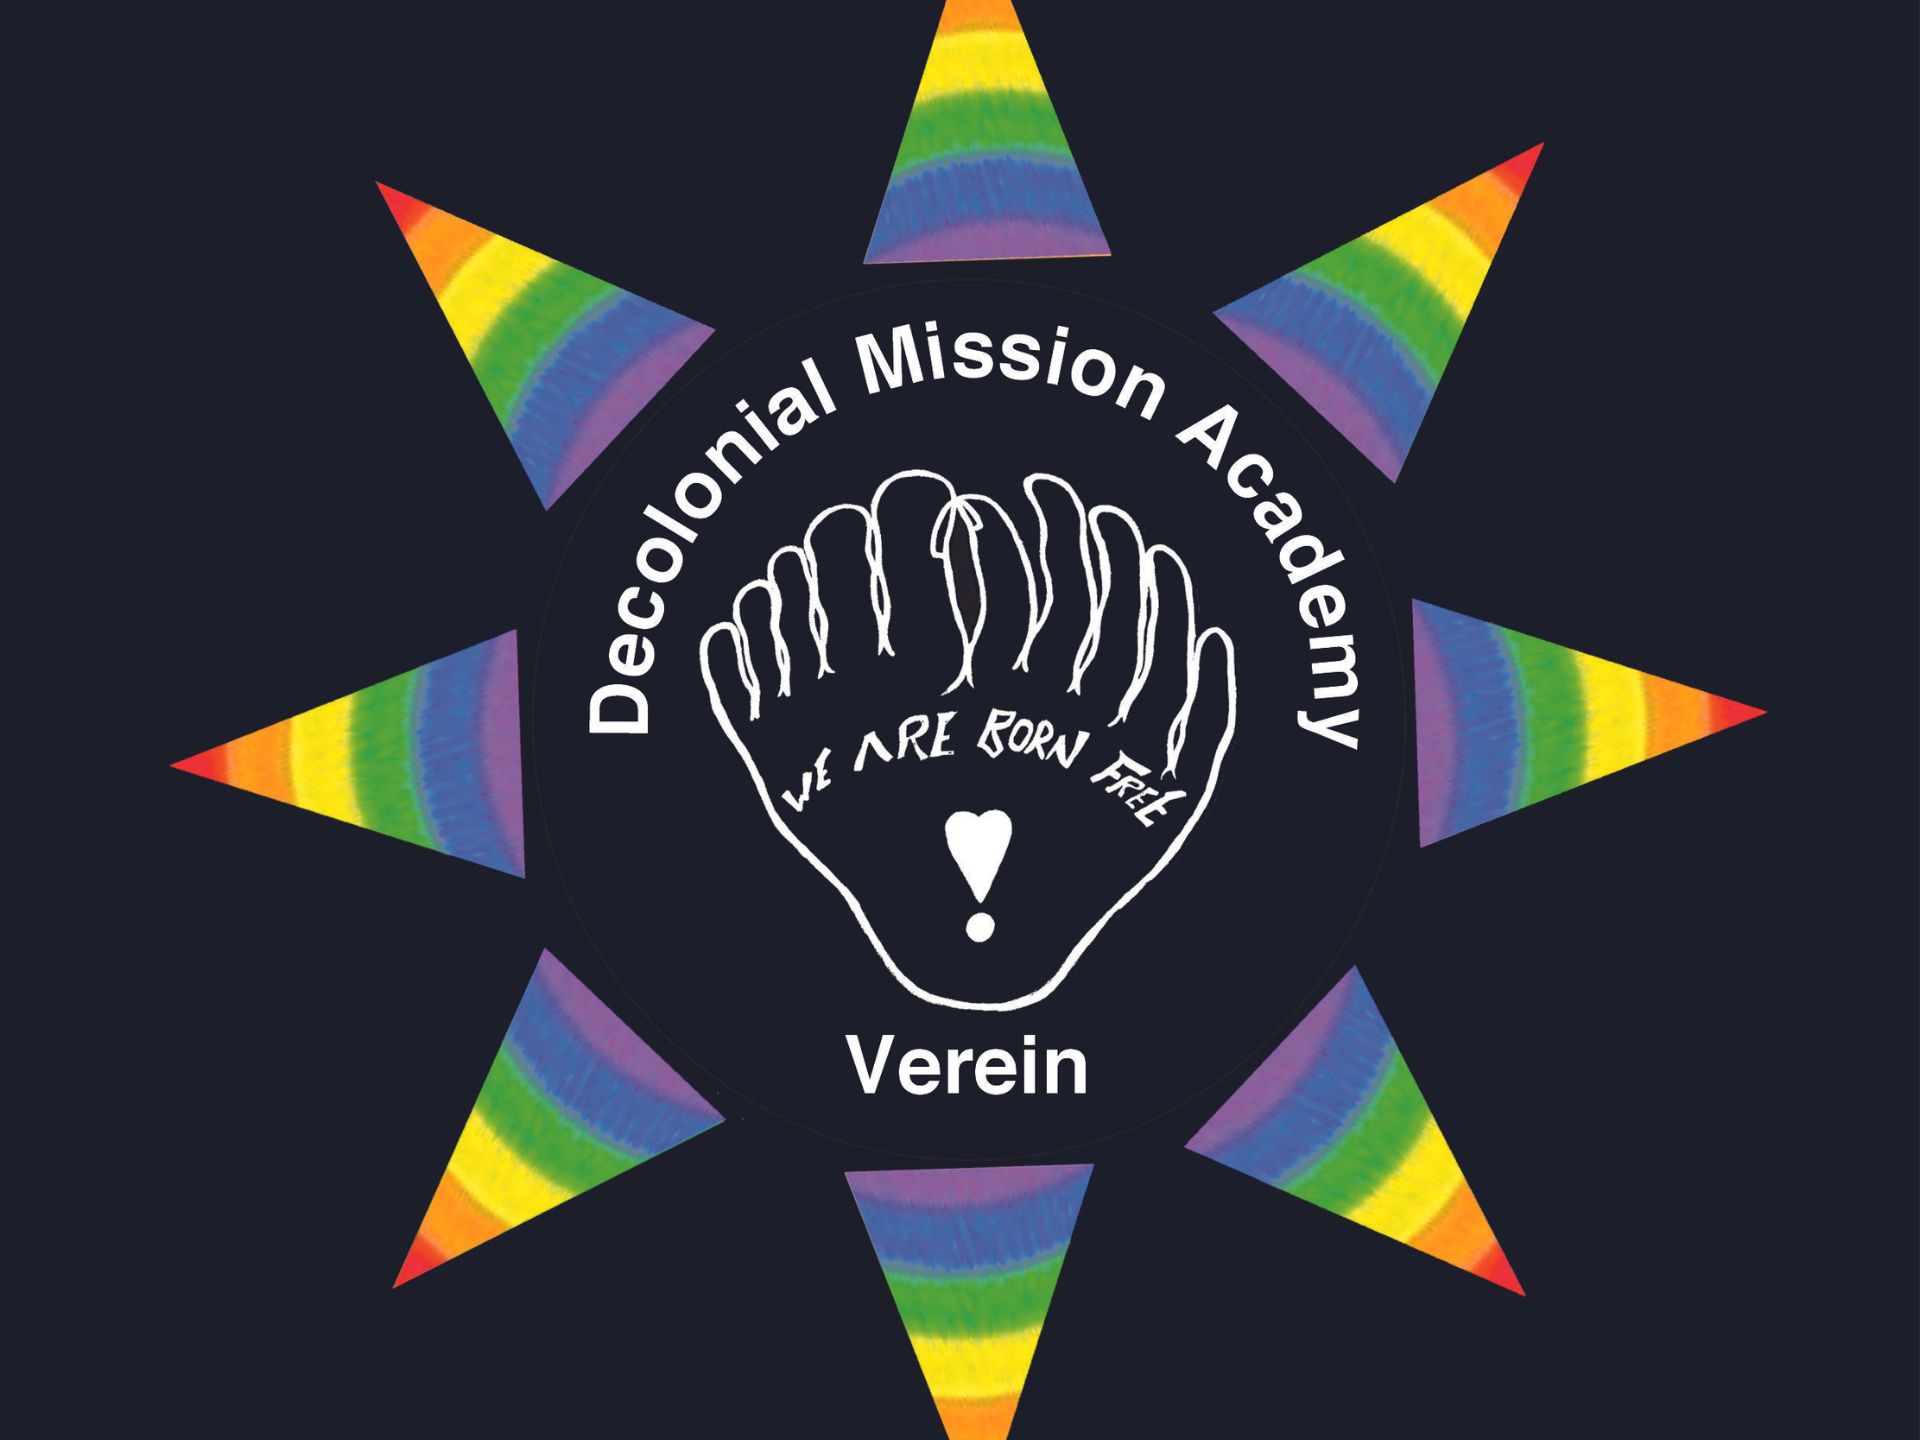 Decolonizing Voices - Lancement de Wearebornfree Decolonial Mission Academy